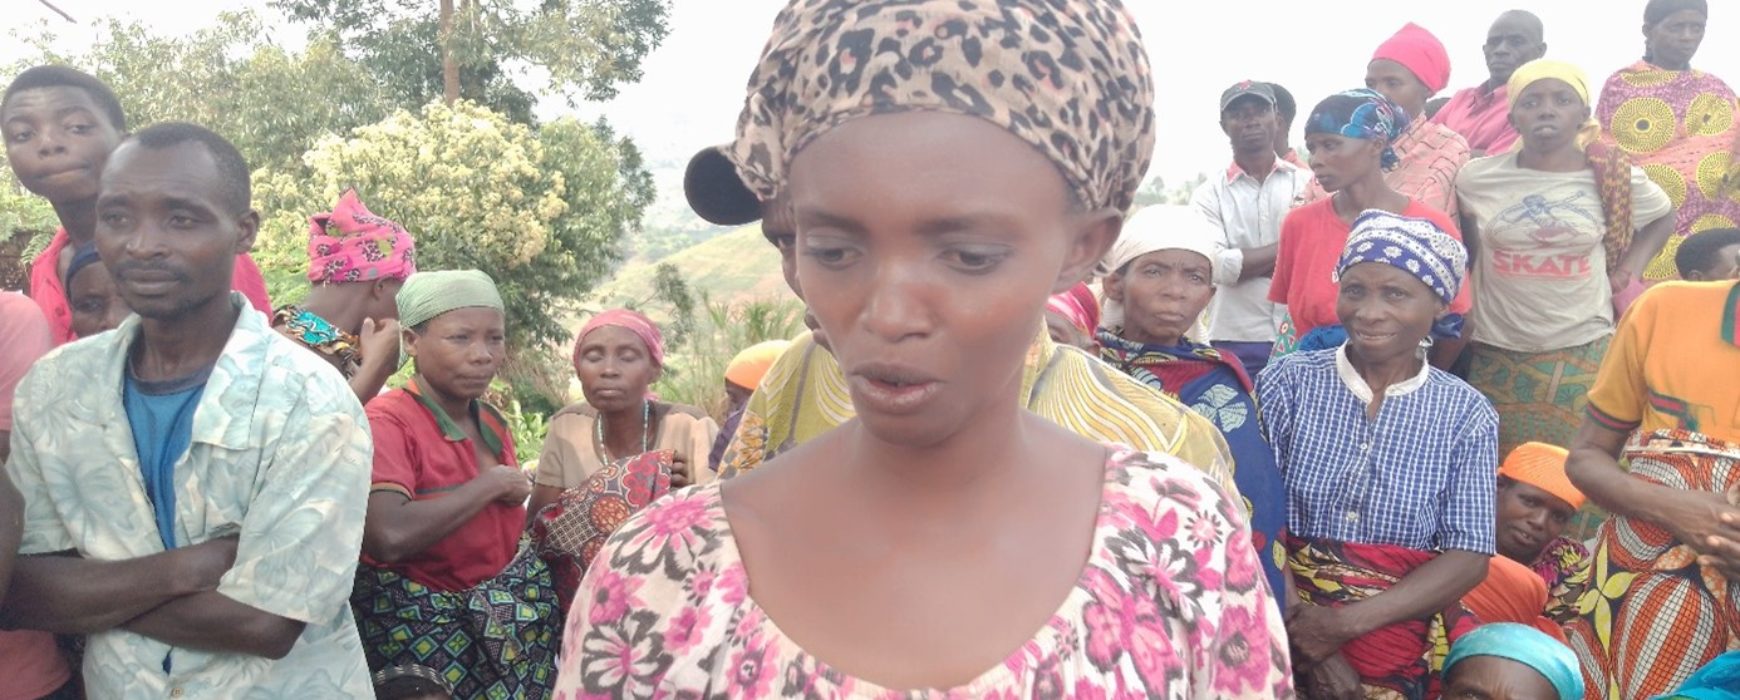 PRRPB : Les femmes et les droits fonciers au Burundi